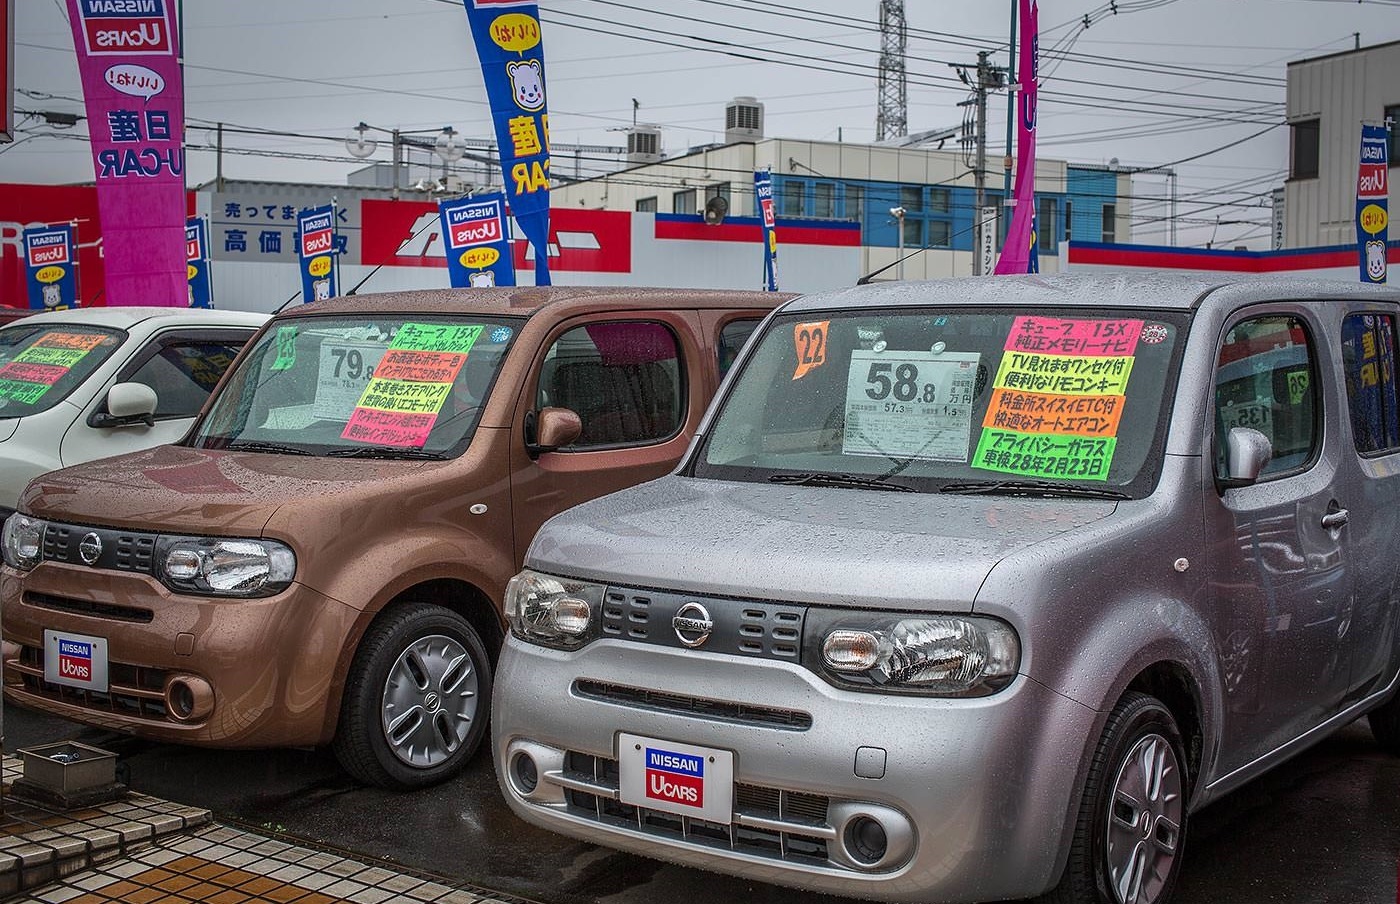 подержанное авто в японии